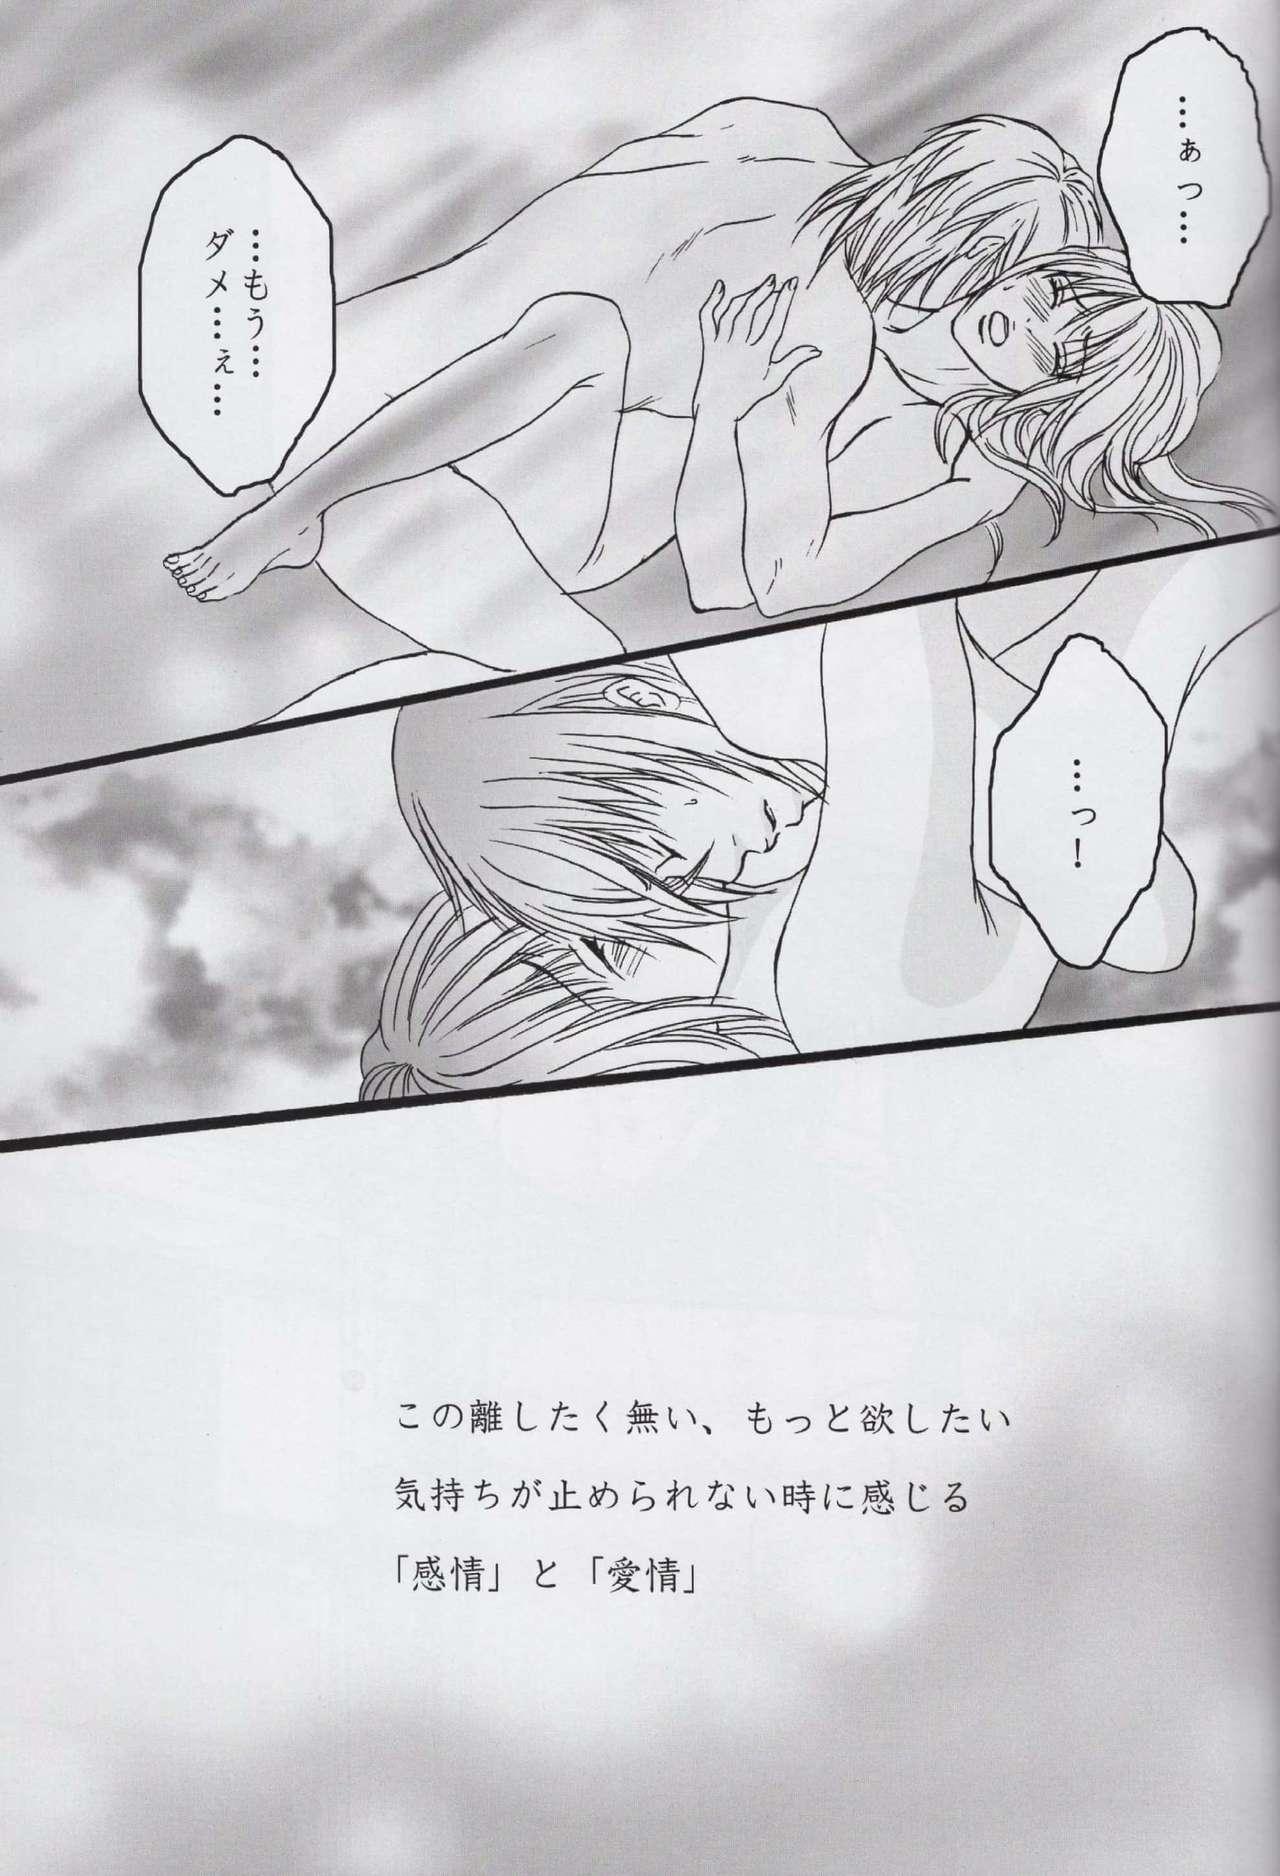 Polla Sore wa Yoru no Sei - Kamigami no asobi Bukkake Boys - Page 12